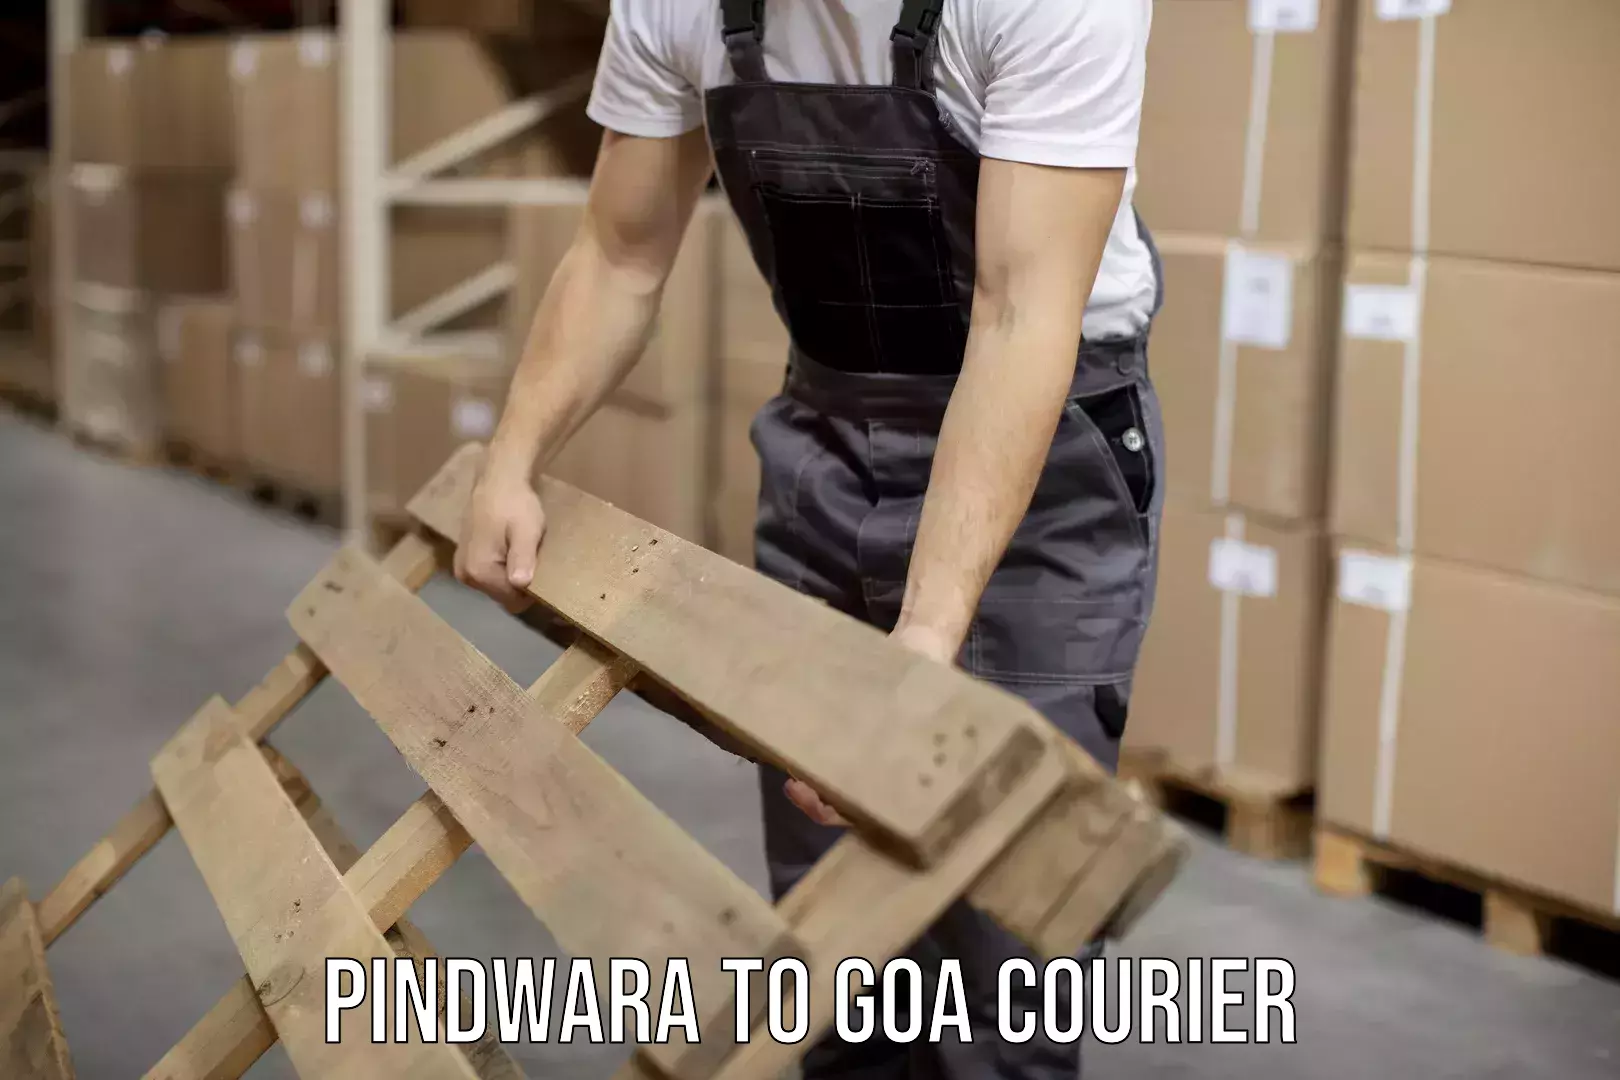 Digital courier platforms Pindwara to Goa